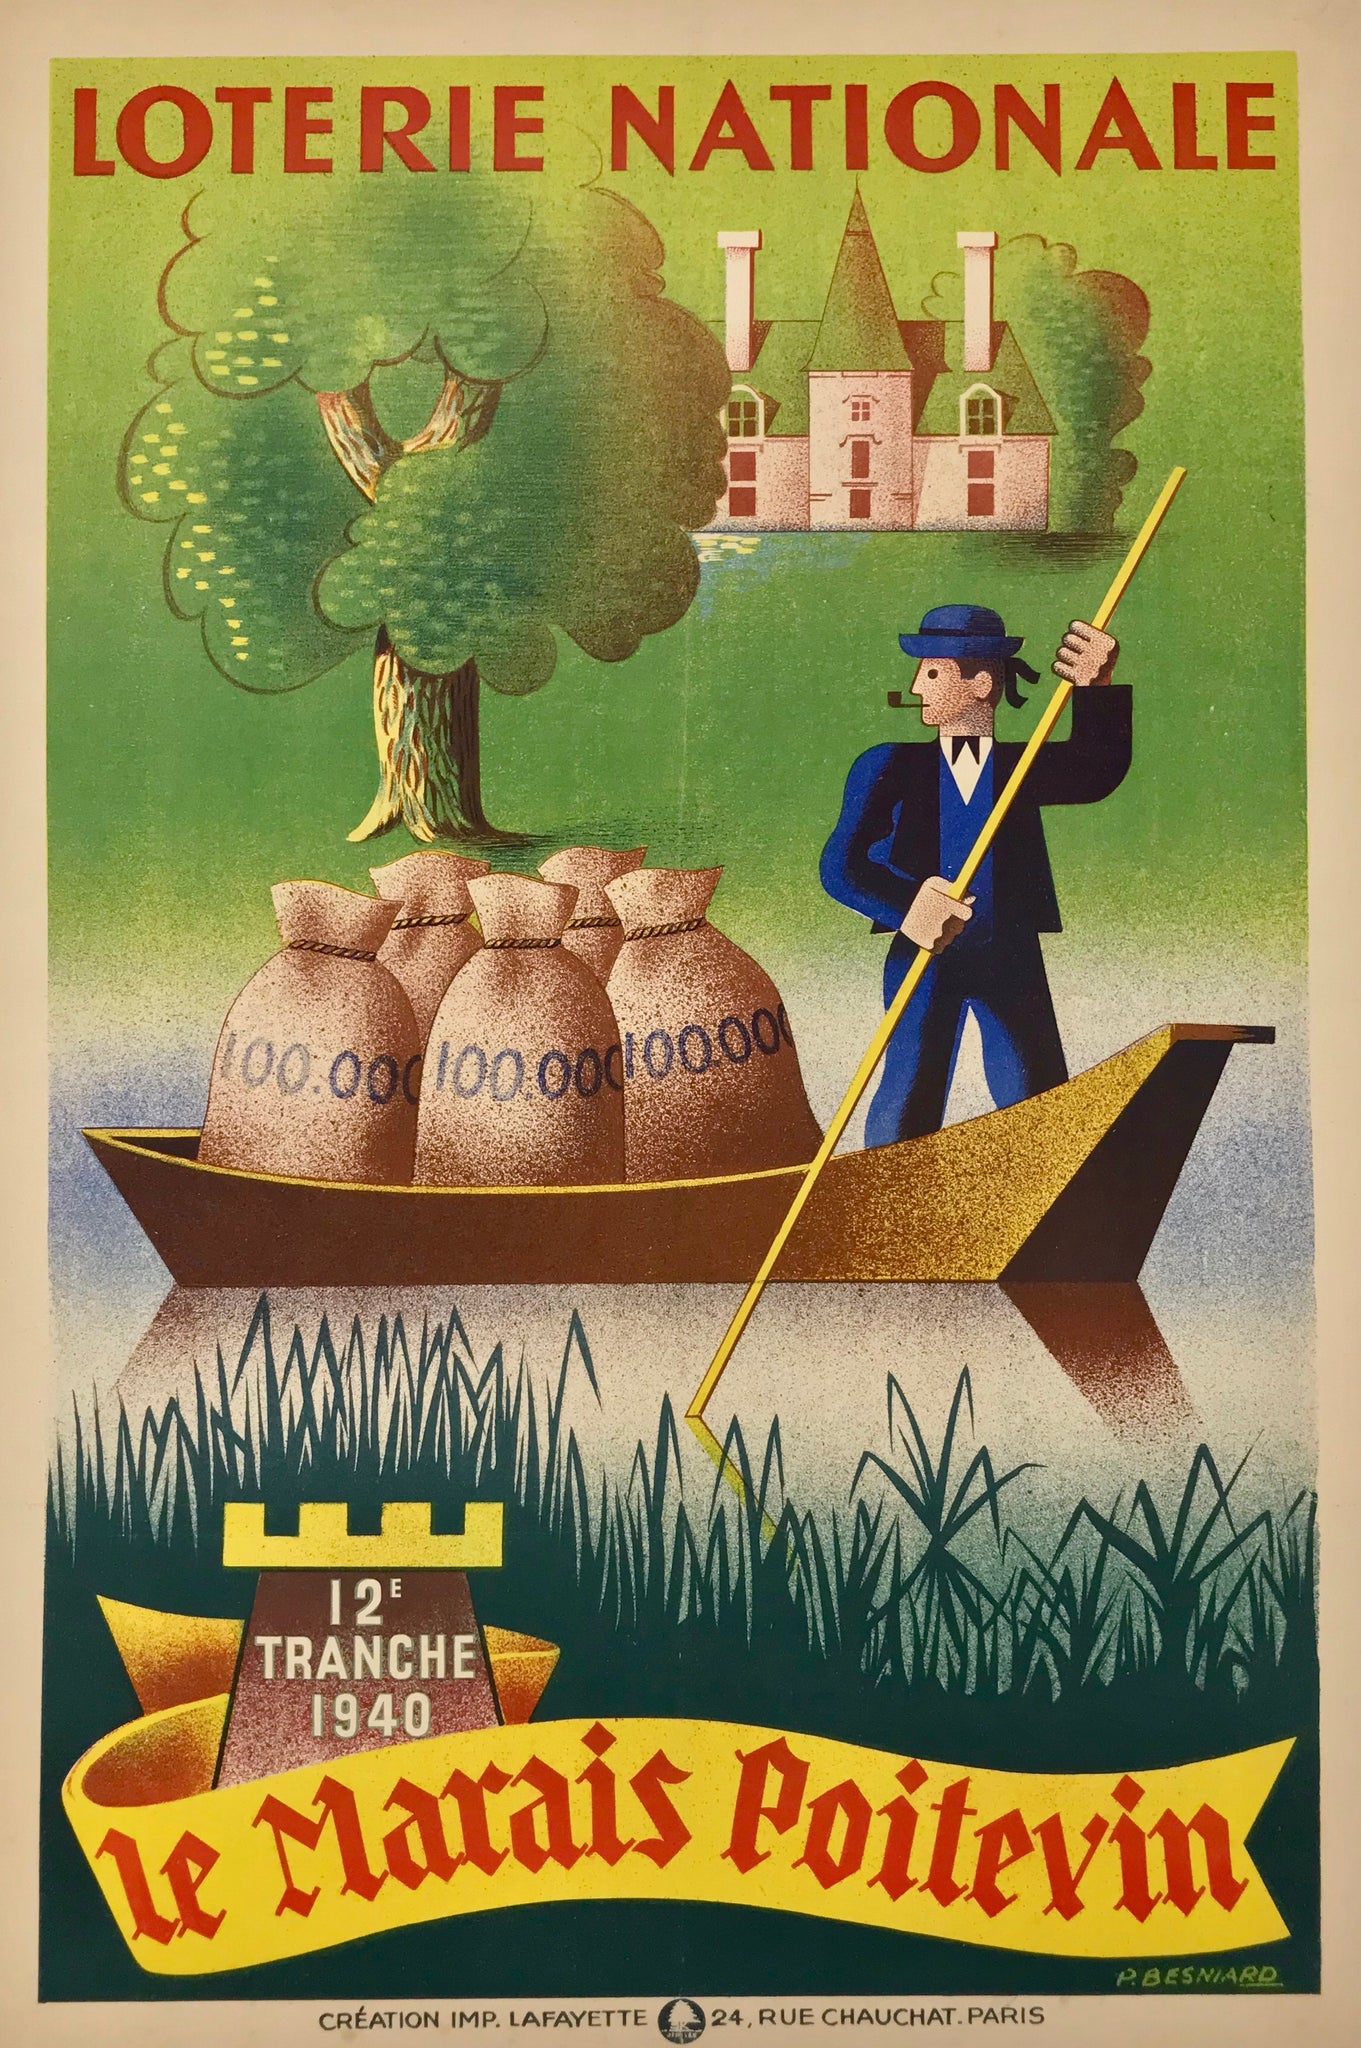 Affiche Loterie Nationale - Le Marais Poitevi, Par P.Besniard, 1940    Affiche originale 12 éme tranche de la loterie nationale, le marais Poitevin  Réalisée par Besniard en 1940